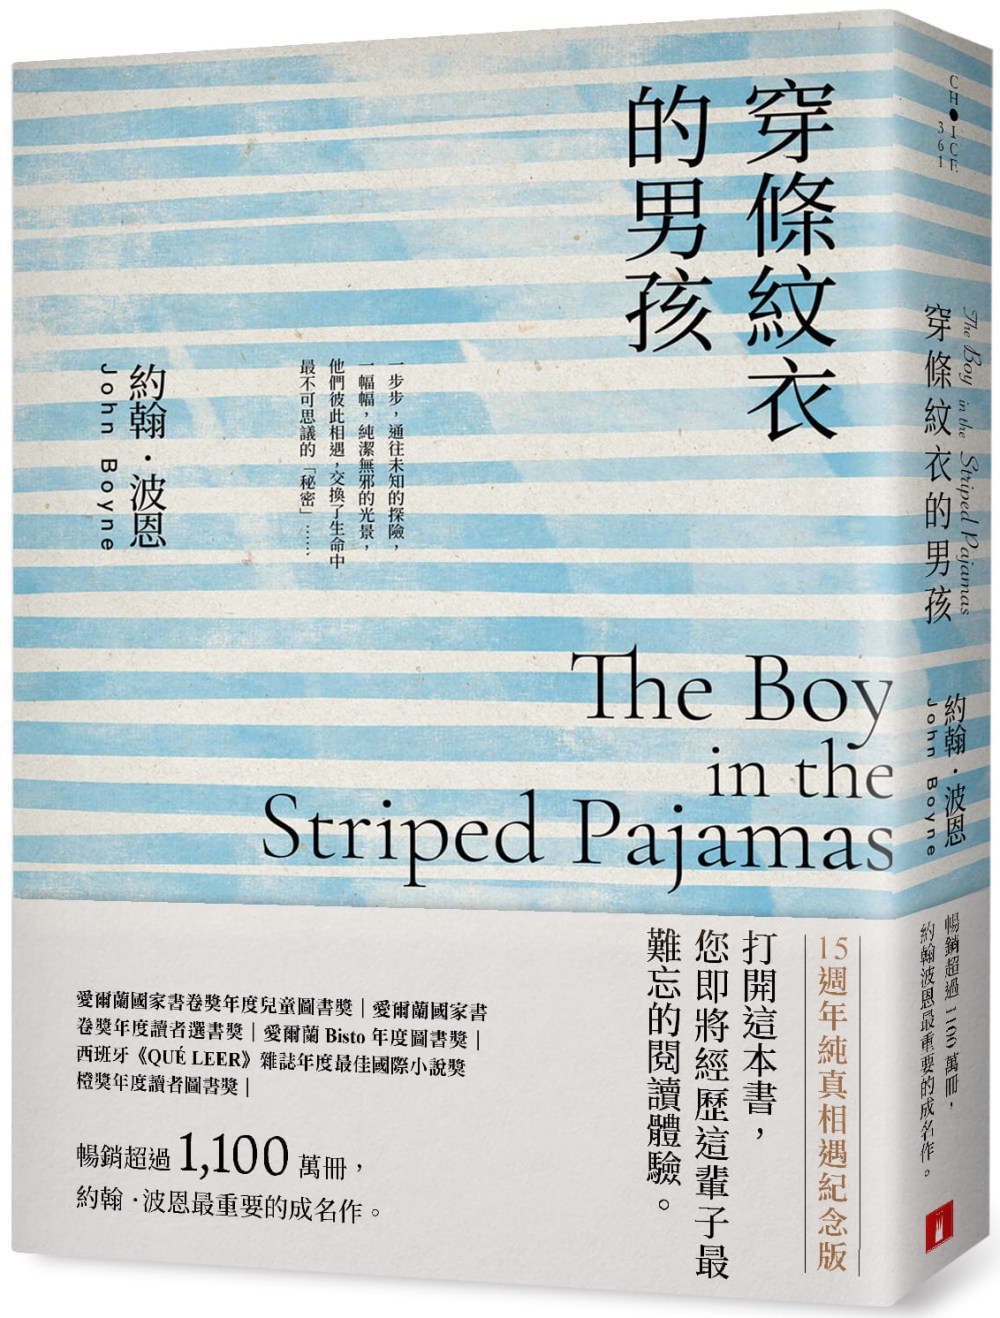 穿條紋衣的男孩【15週年純真相遇紀念版】：暢銷超過1,100萬冊，約翰.波恩最重要的成名作。